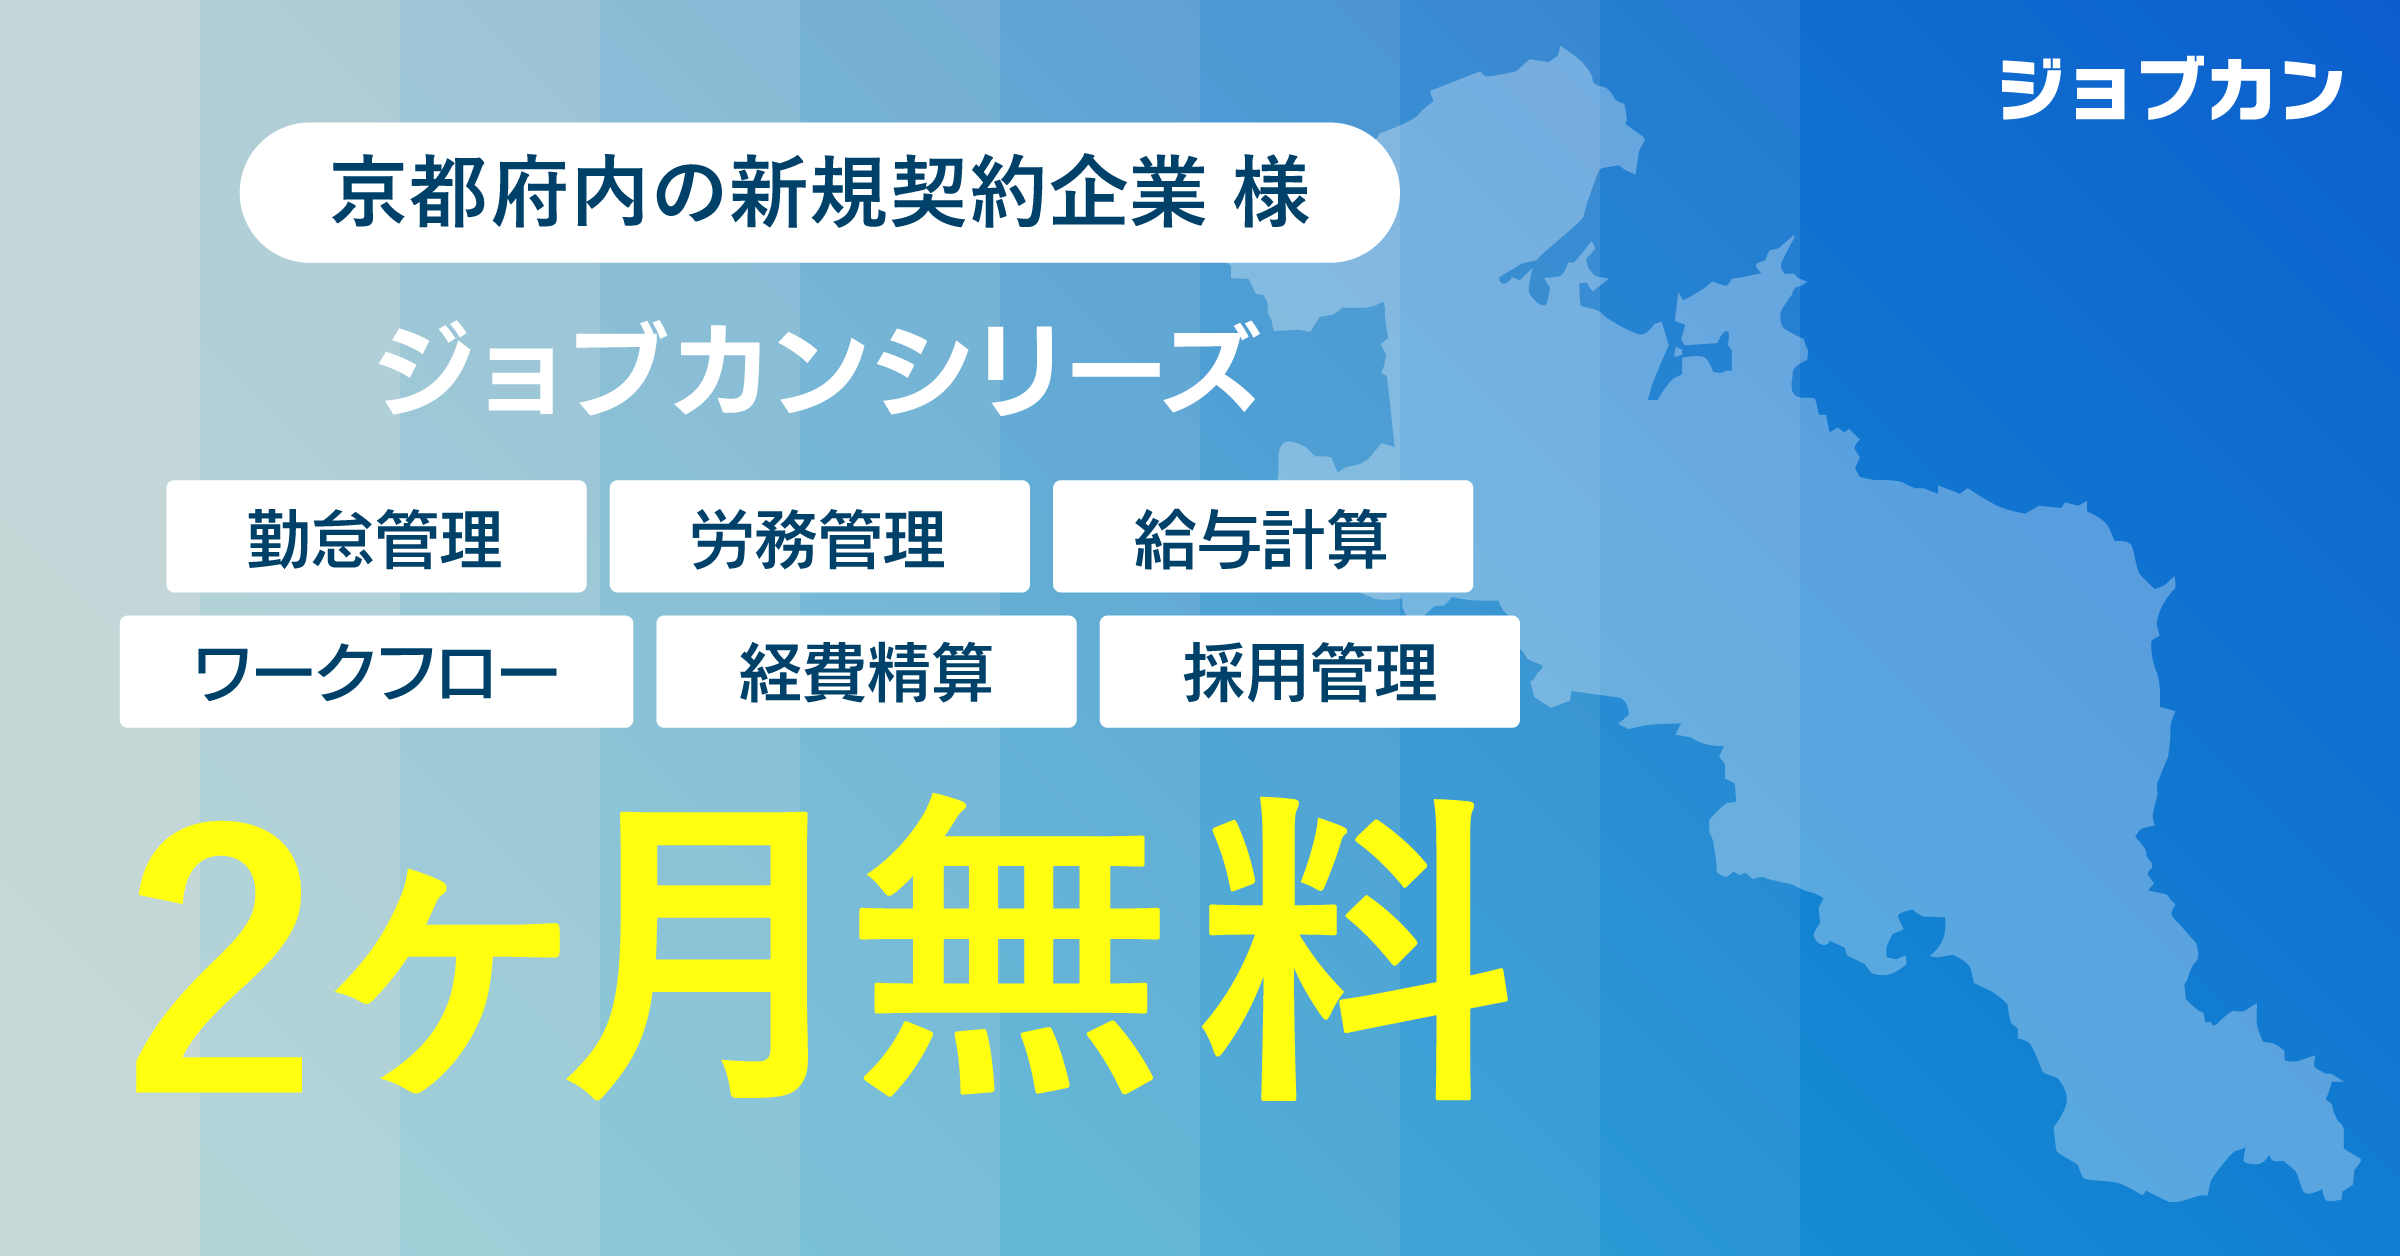 ジョブカン関西営業所が 京都府内企業向け無償プランを提供開始 「ものづくり都市」京都からテレワークを推進。西日本地域のDXを加速